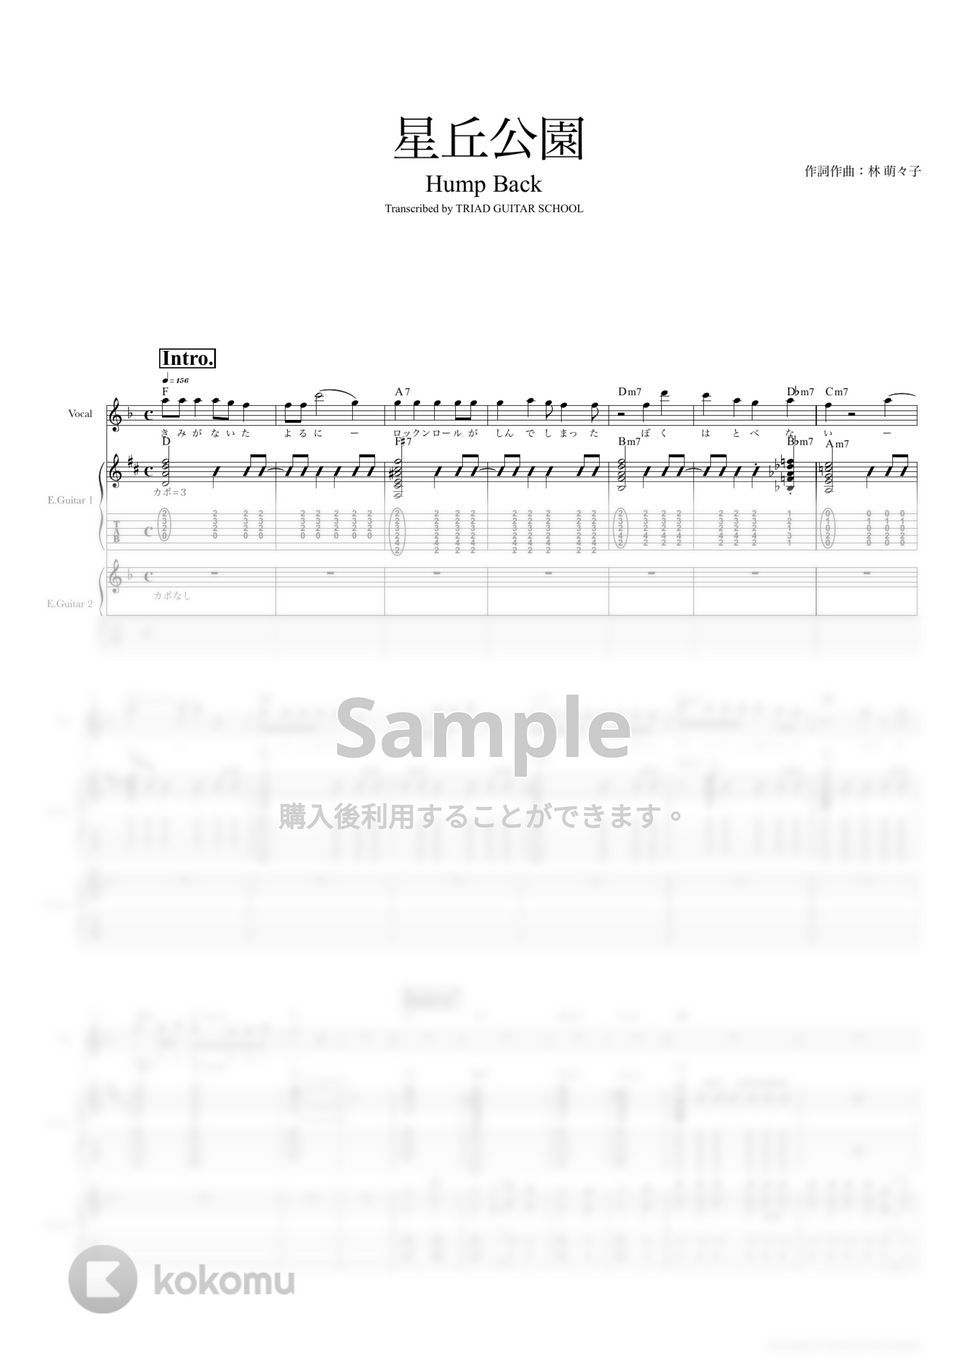 Hump Back - 星丘公園 (ギタースコア・歌詞・コード付き) by TRIAD GUITAR SCHOOL